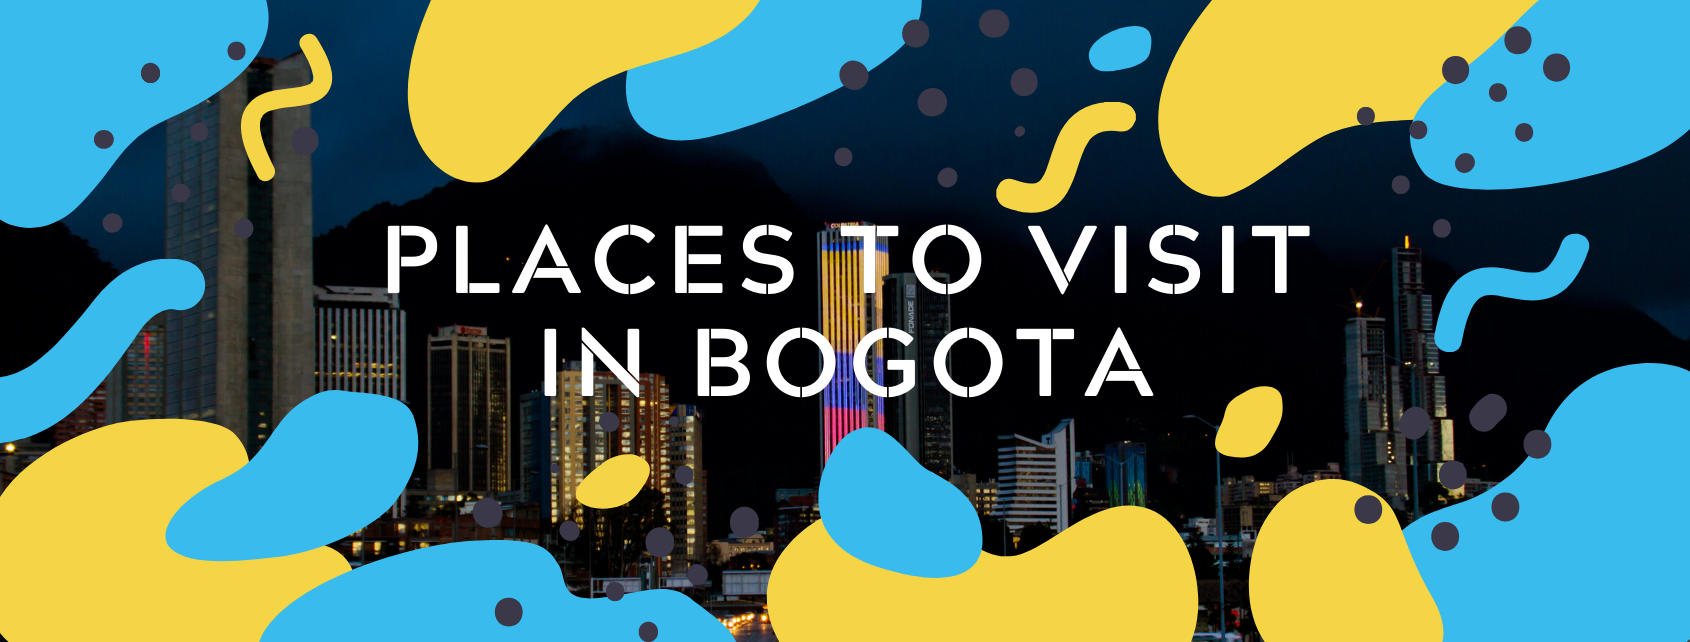 Places to visit in Bogota